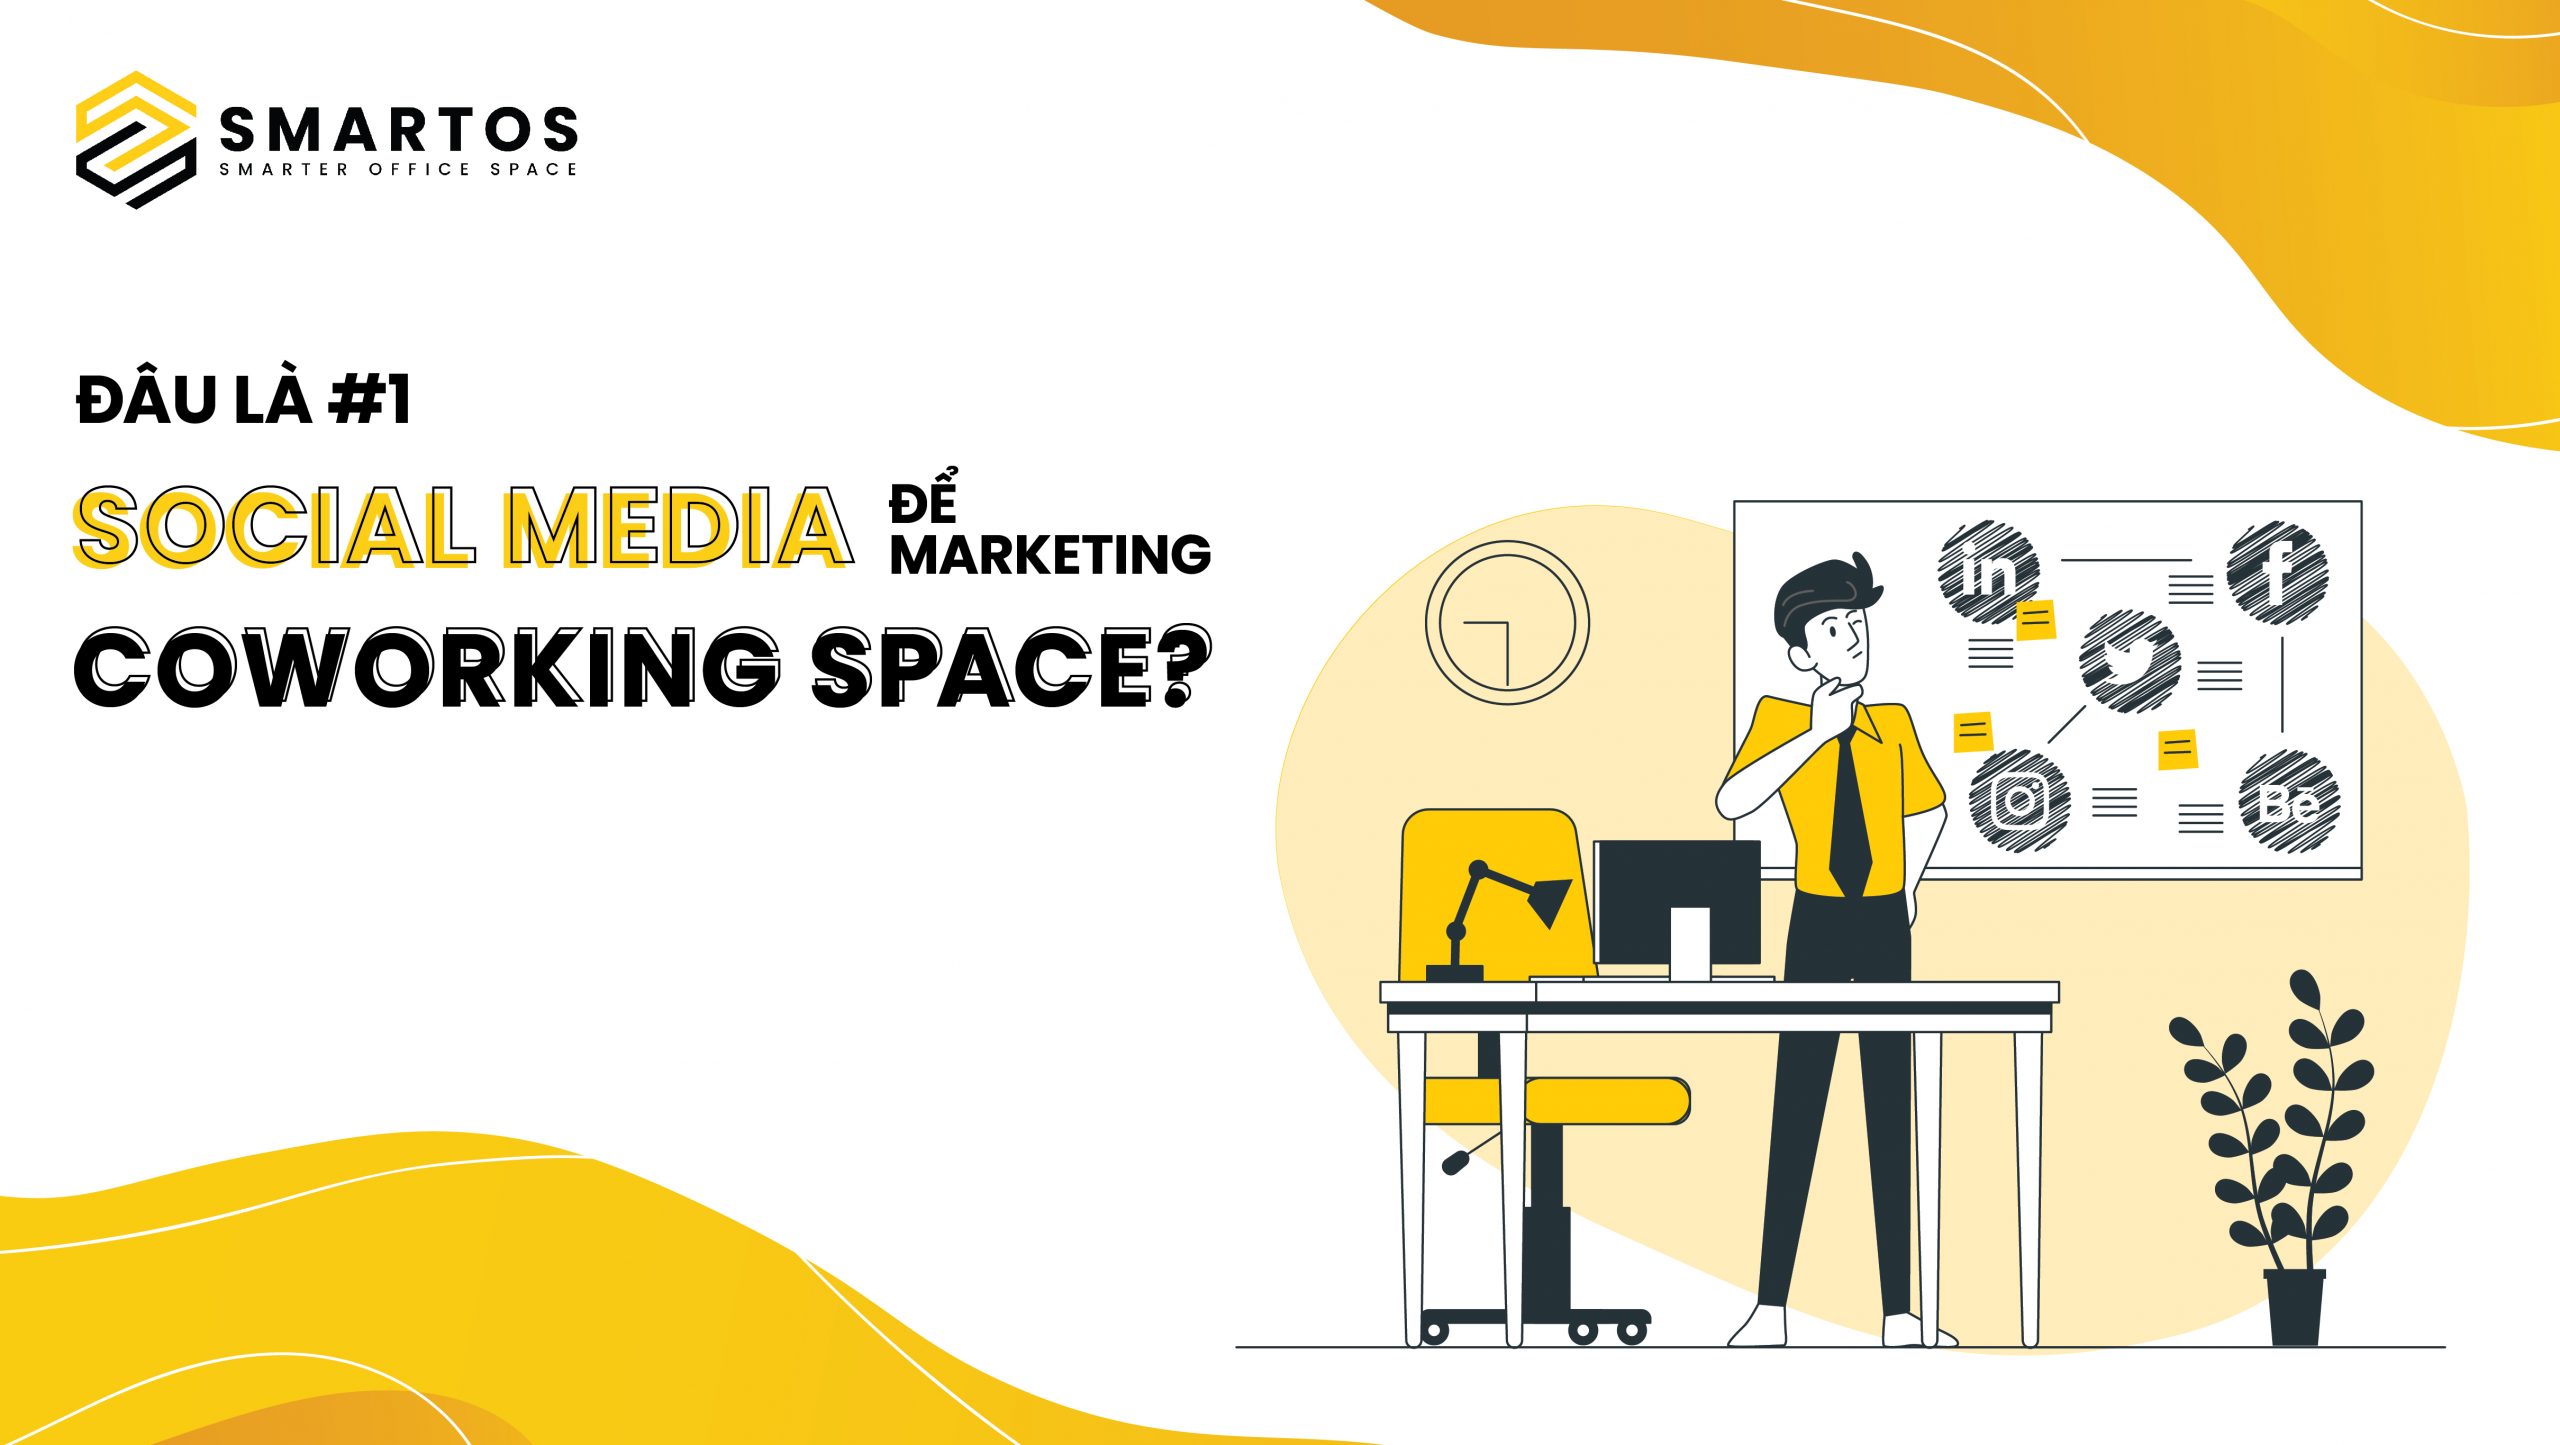 Đâu là #1 Social Media để Marketing Coworking Space?